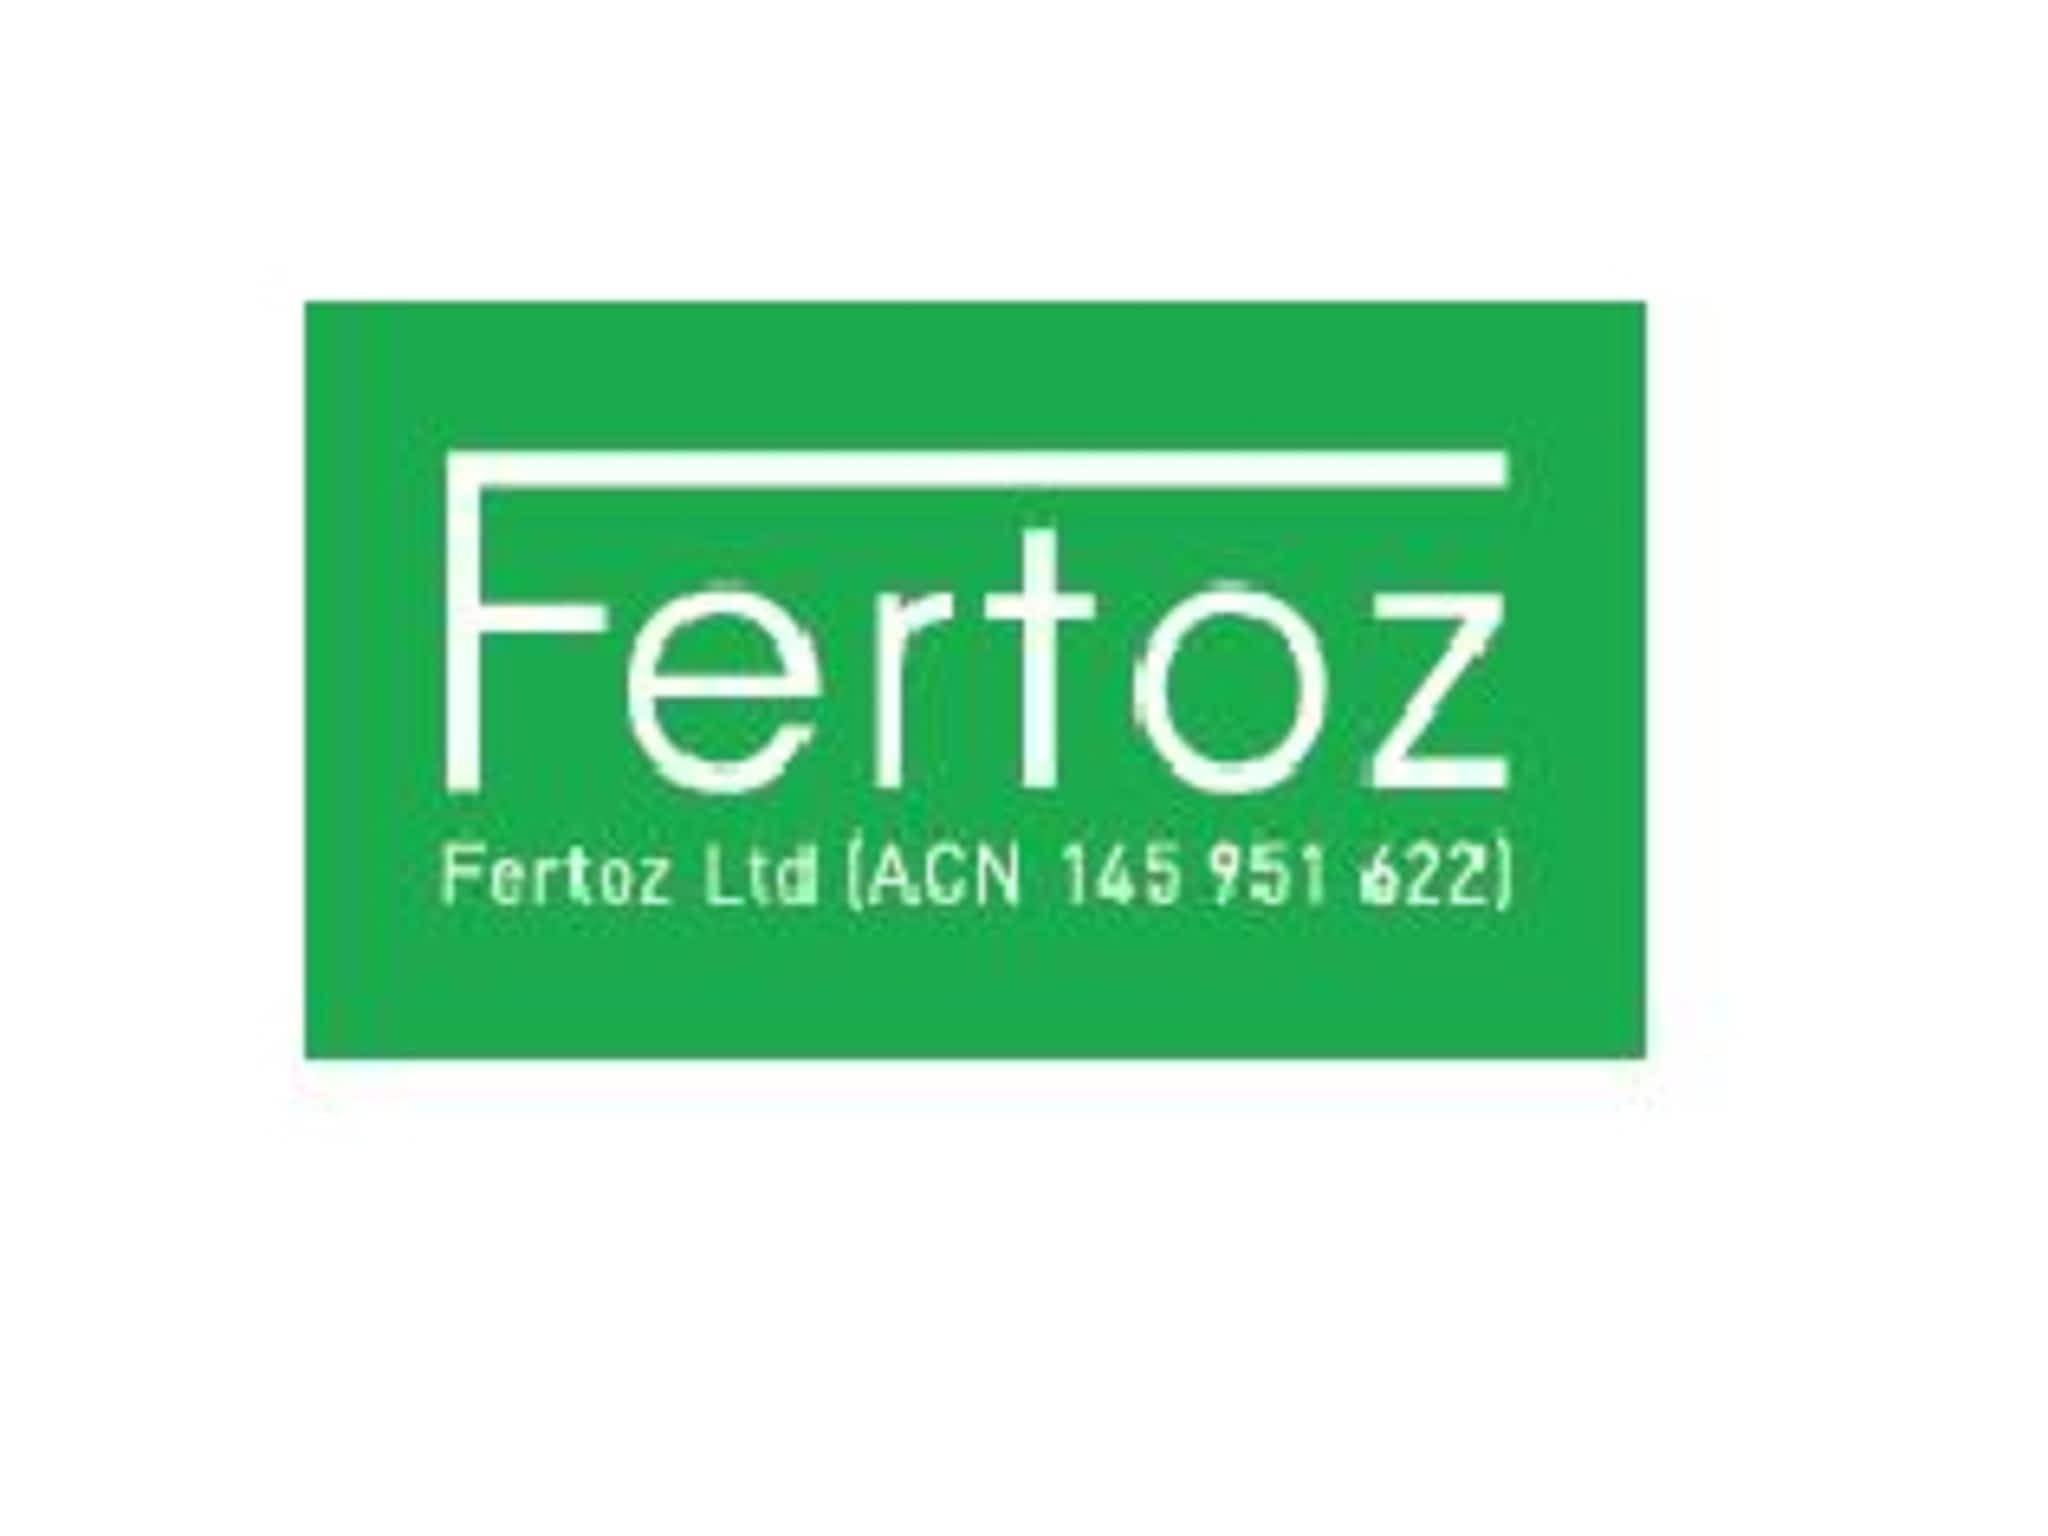 photo Fertoz Ltd